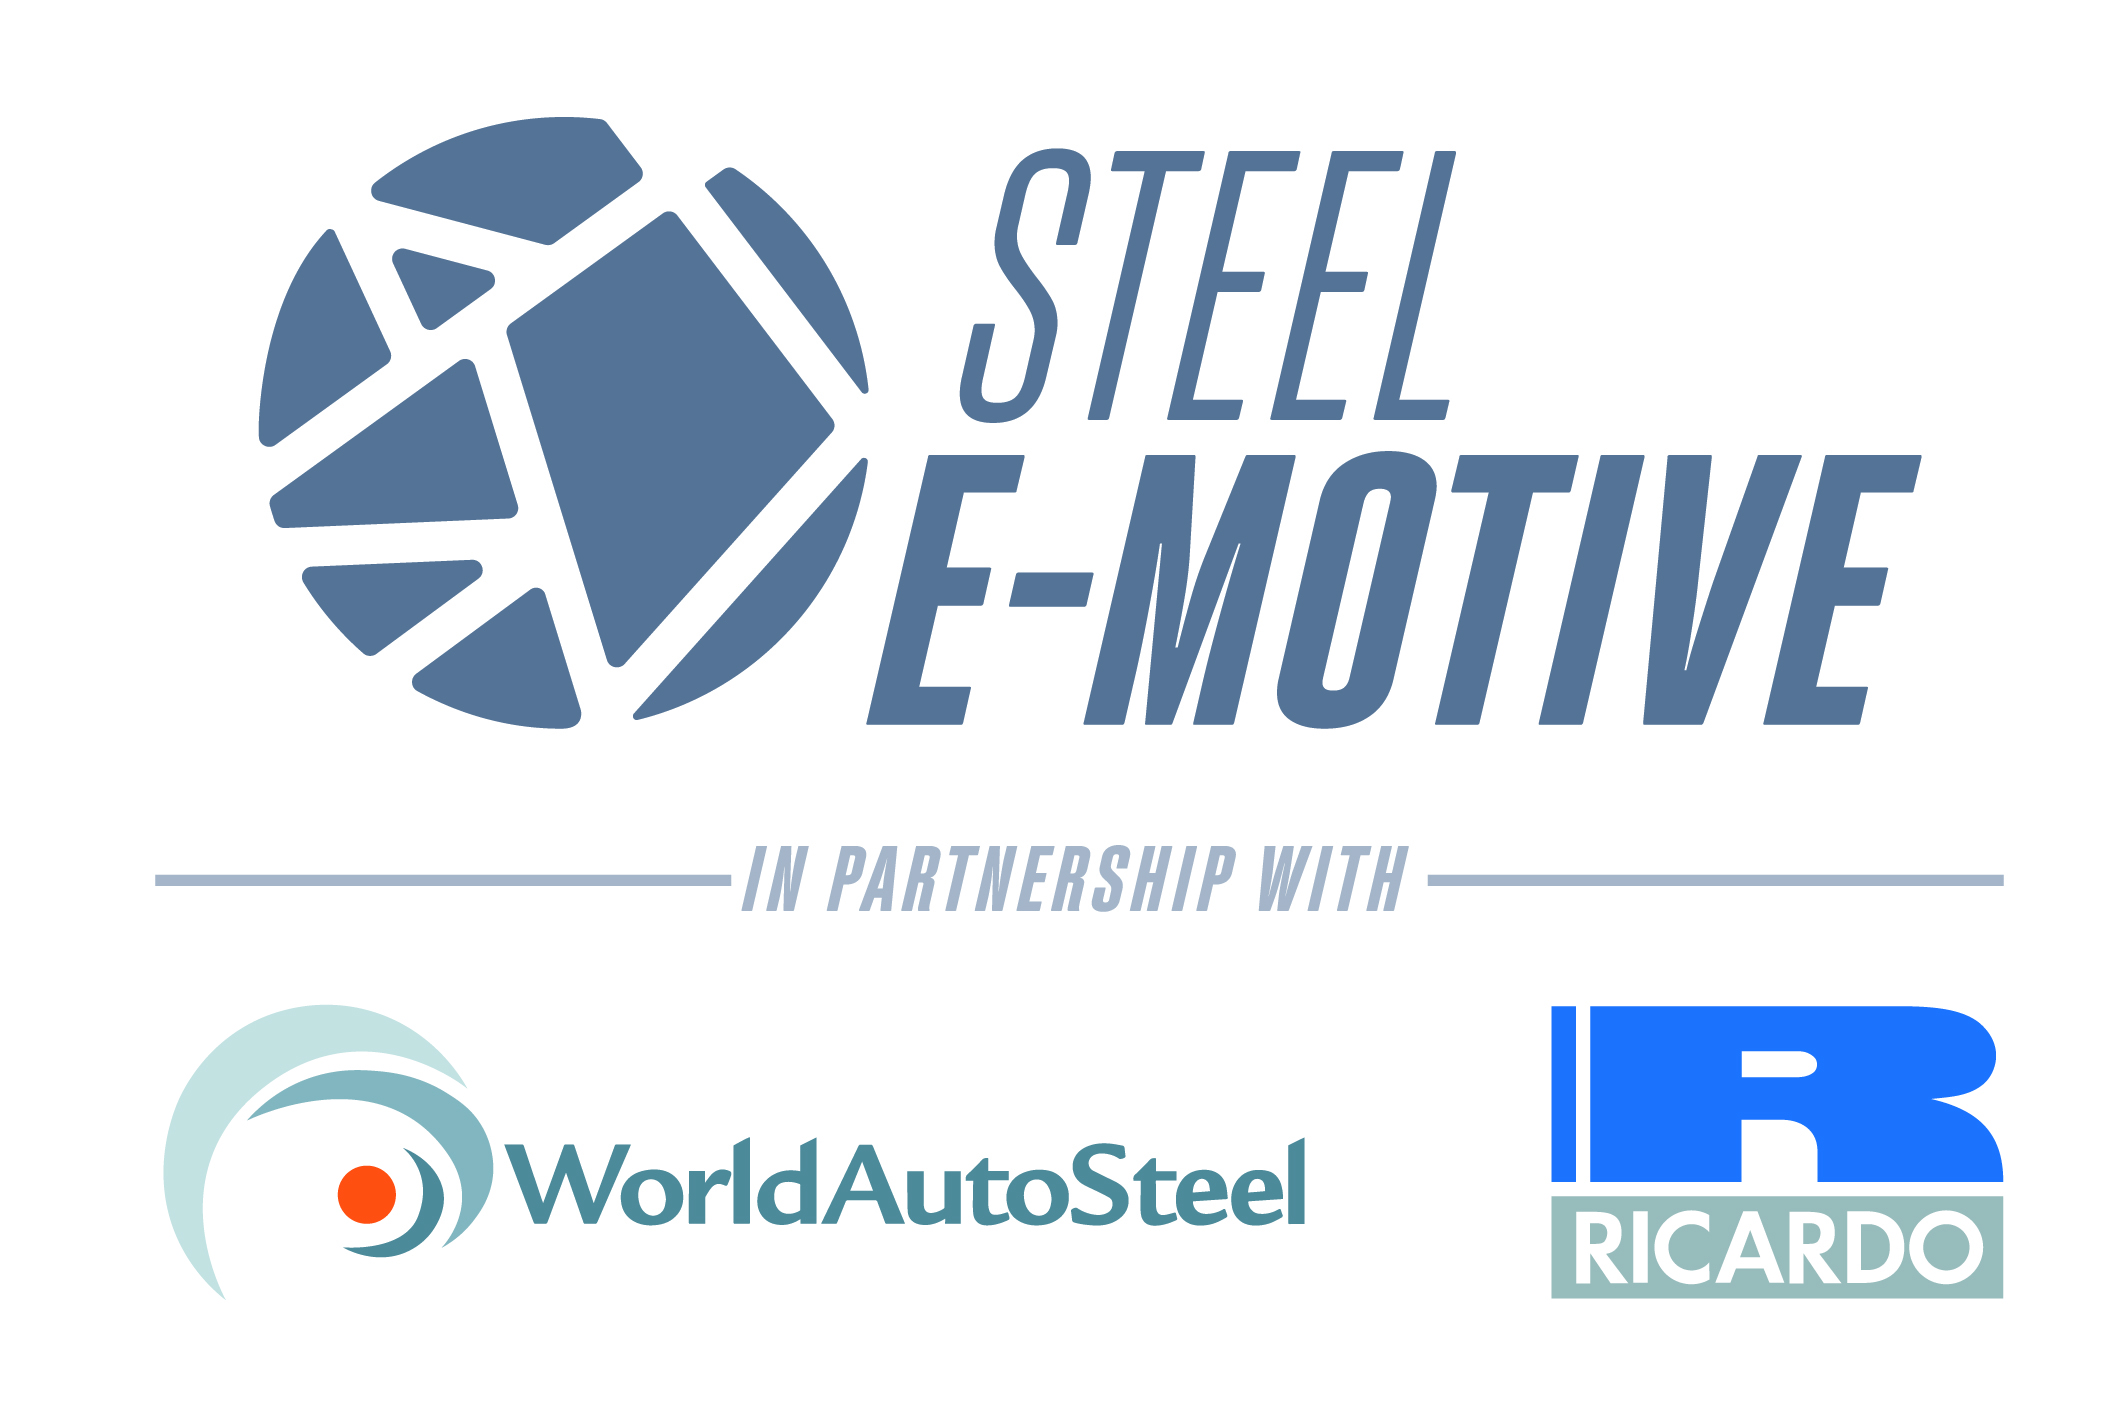 Steel E-Motive logo